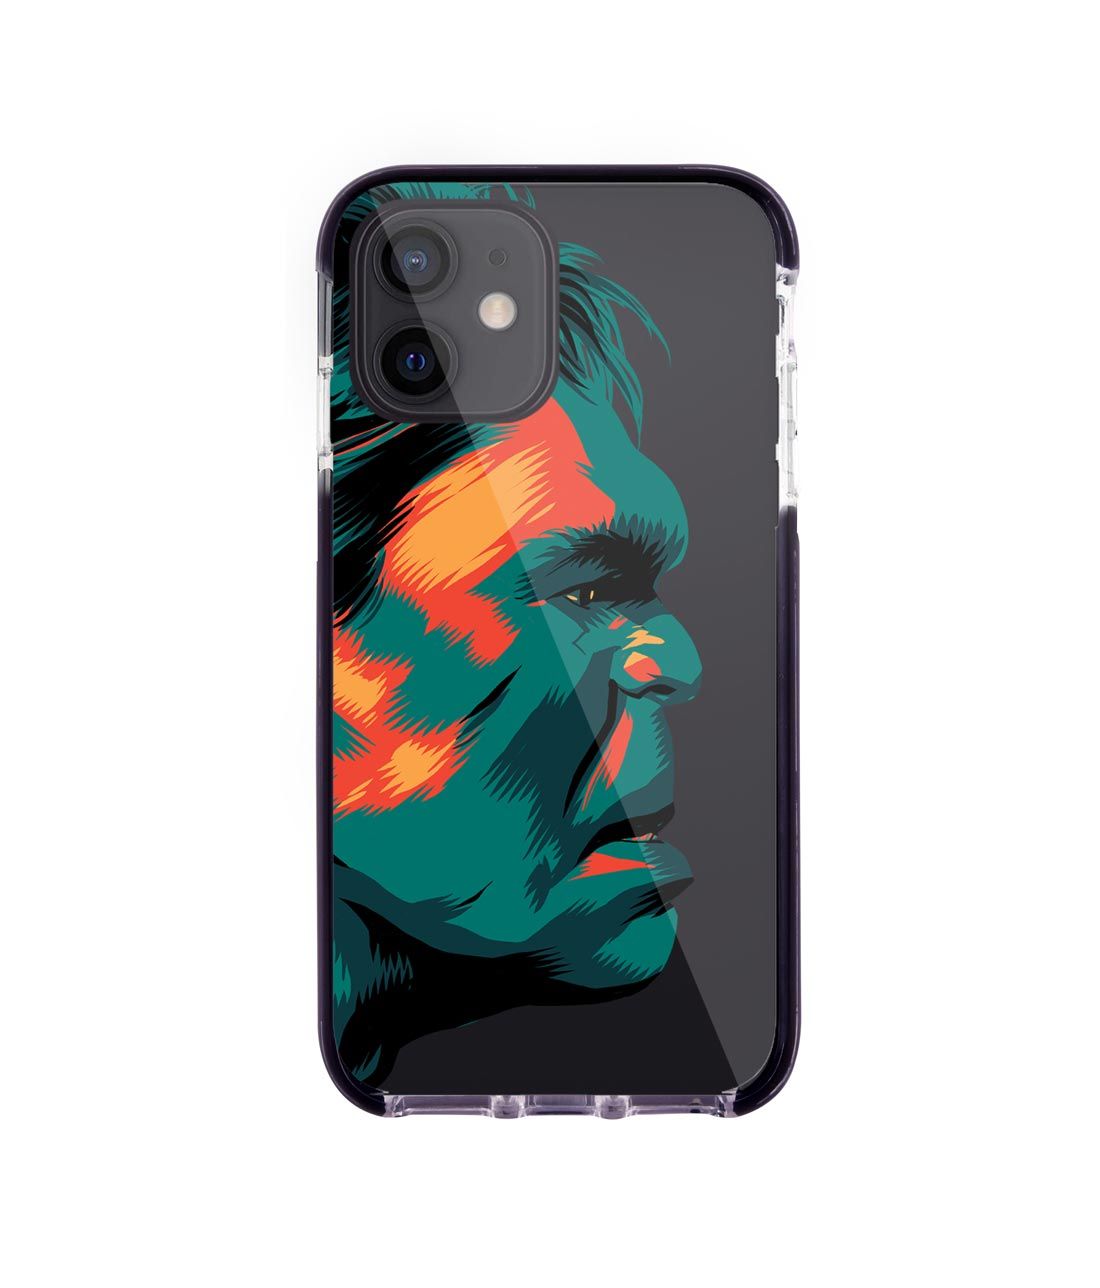 Illuminated Hulk - Extreme Case for iPhone 12 Mini